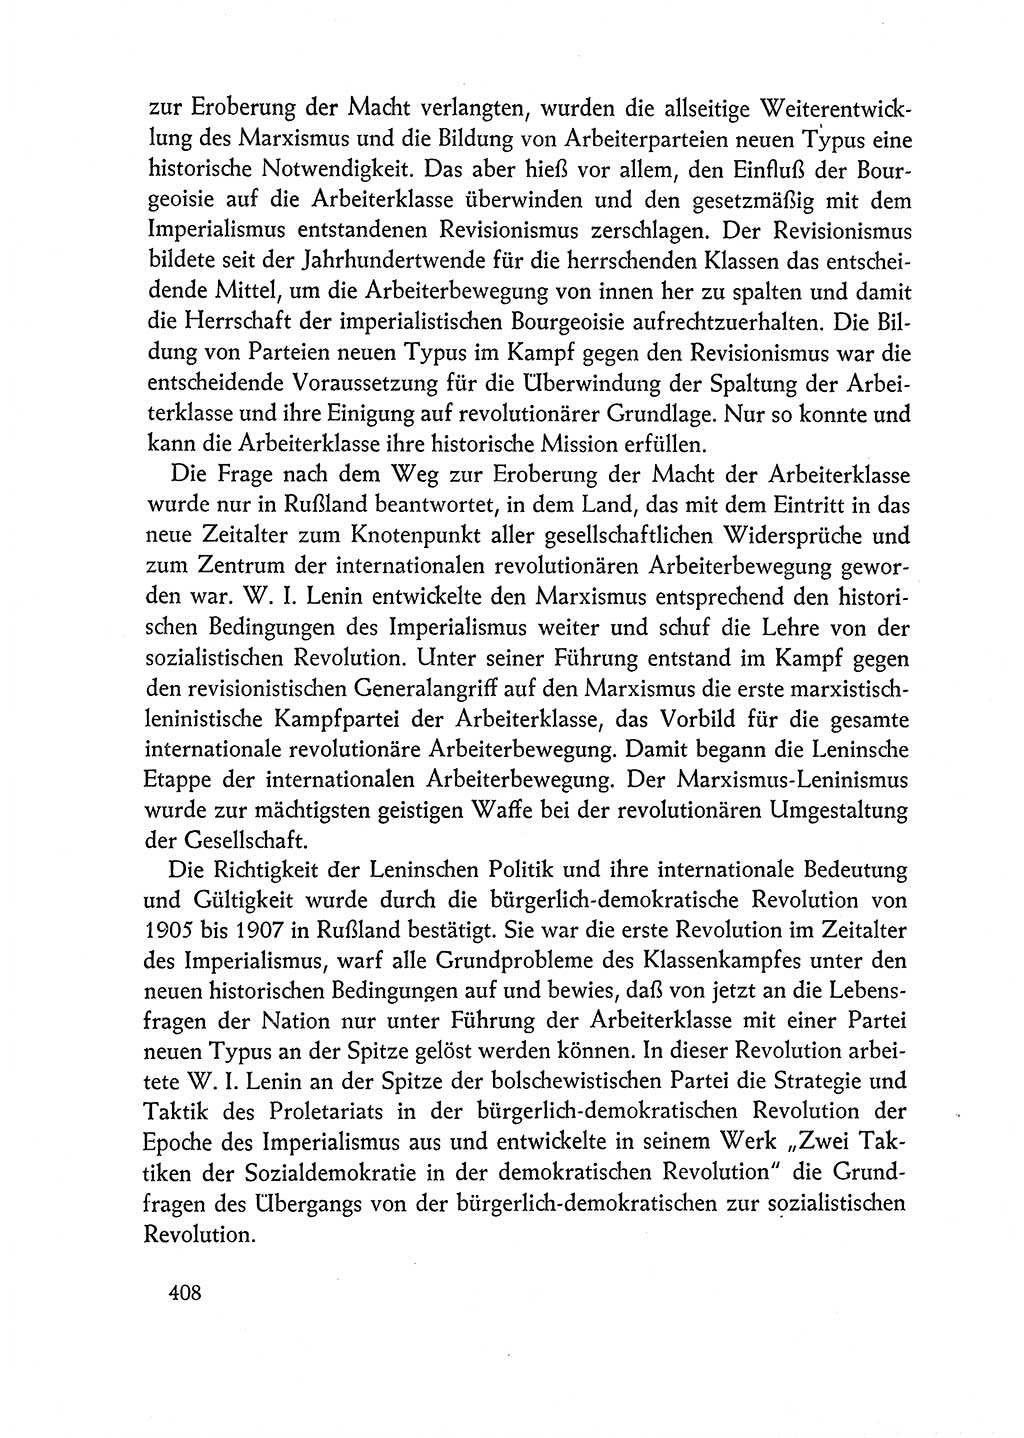 Dokumente der Sozialistischen Einheitspartei Deutschlands (SED) [Deutsche Demokratische Republik (DDR)] 1962-1963, Seite 408 (Dok. SED DDR 1962-1963, S. 408)